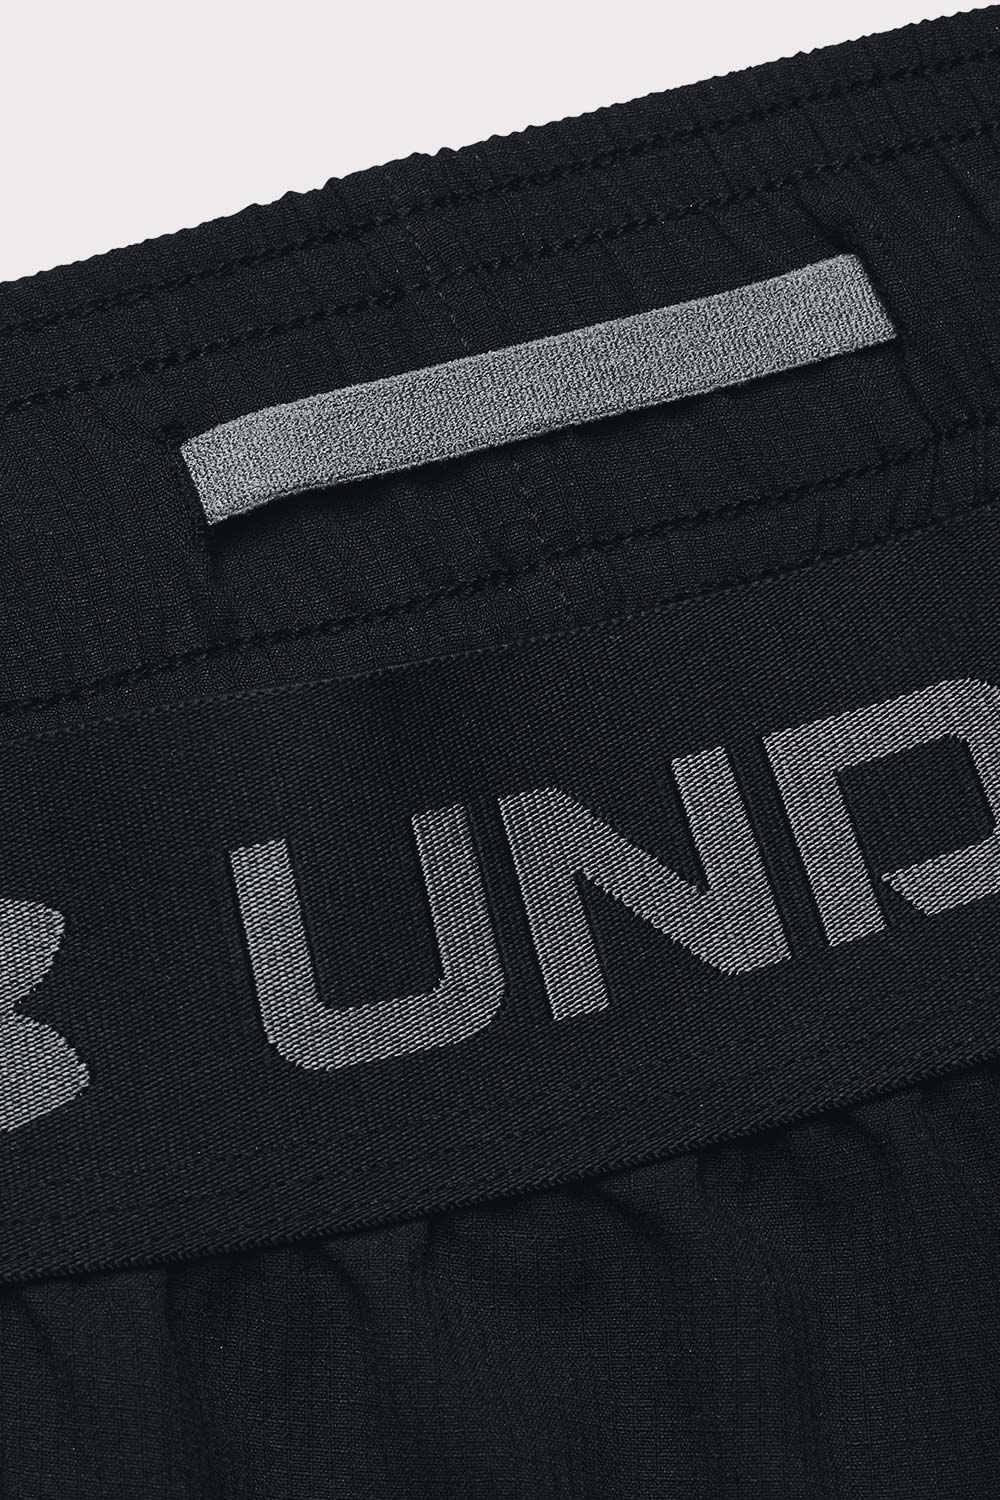 UA Vanish Woven 8in Shorts - Nero